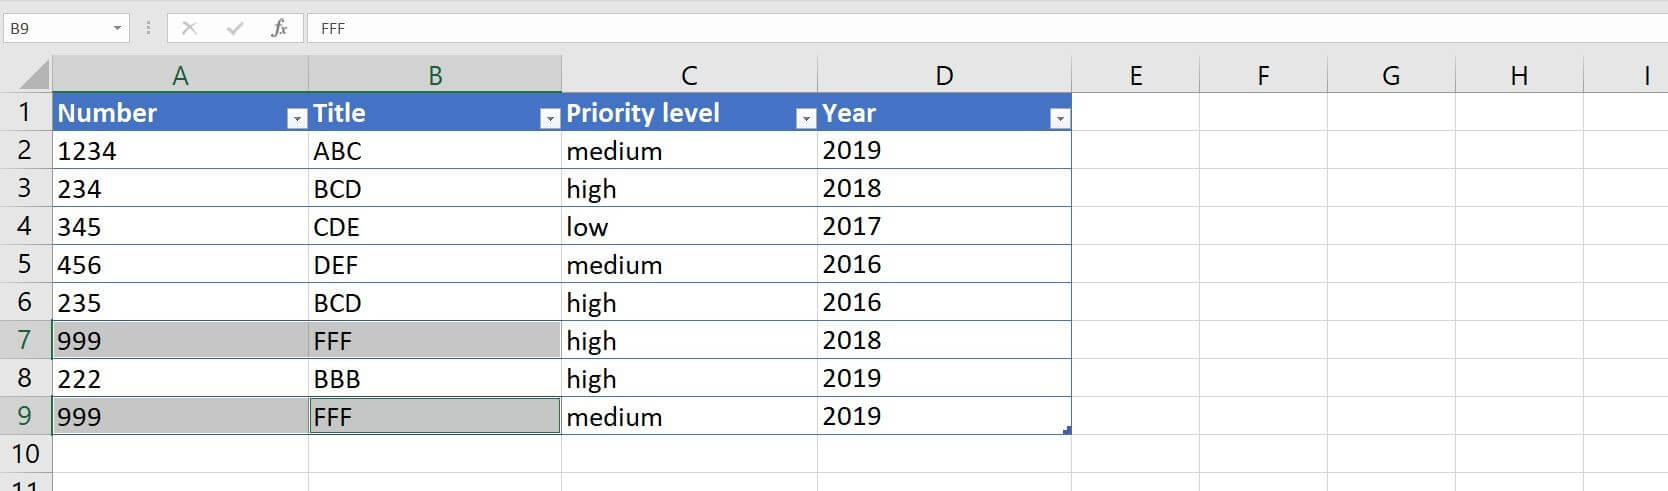 Excel 2016: entrada de ejemplo con duplicados